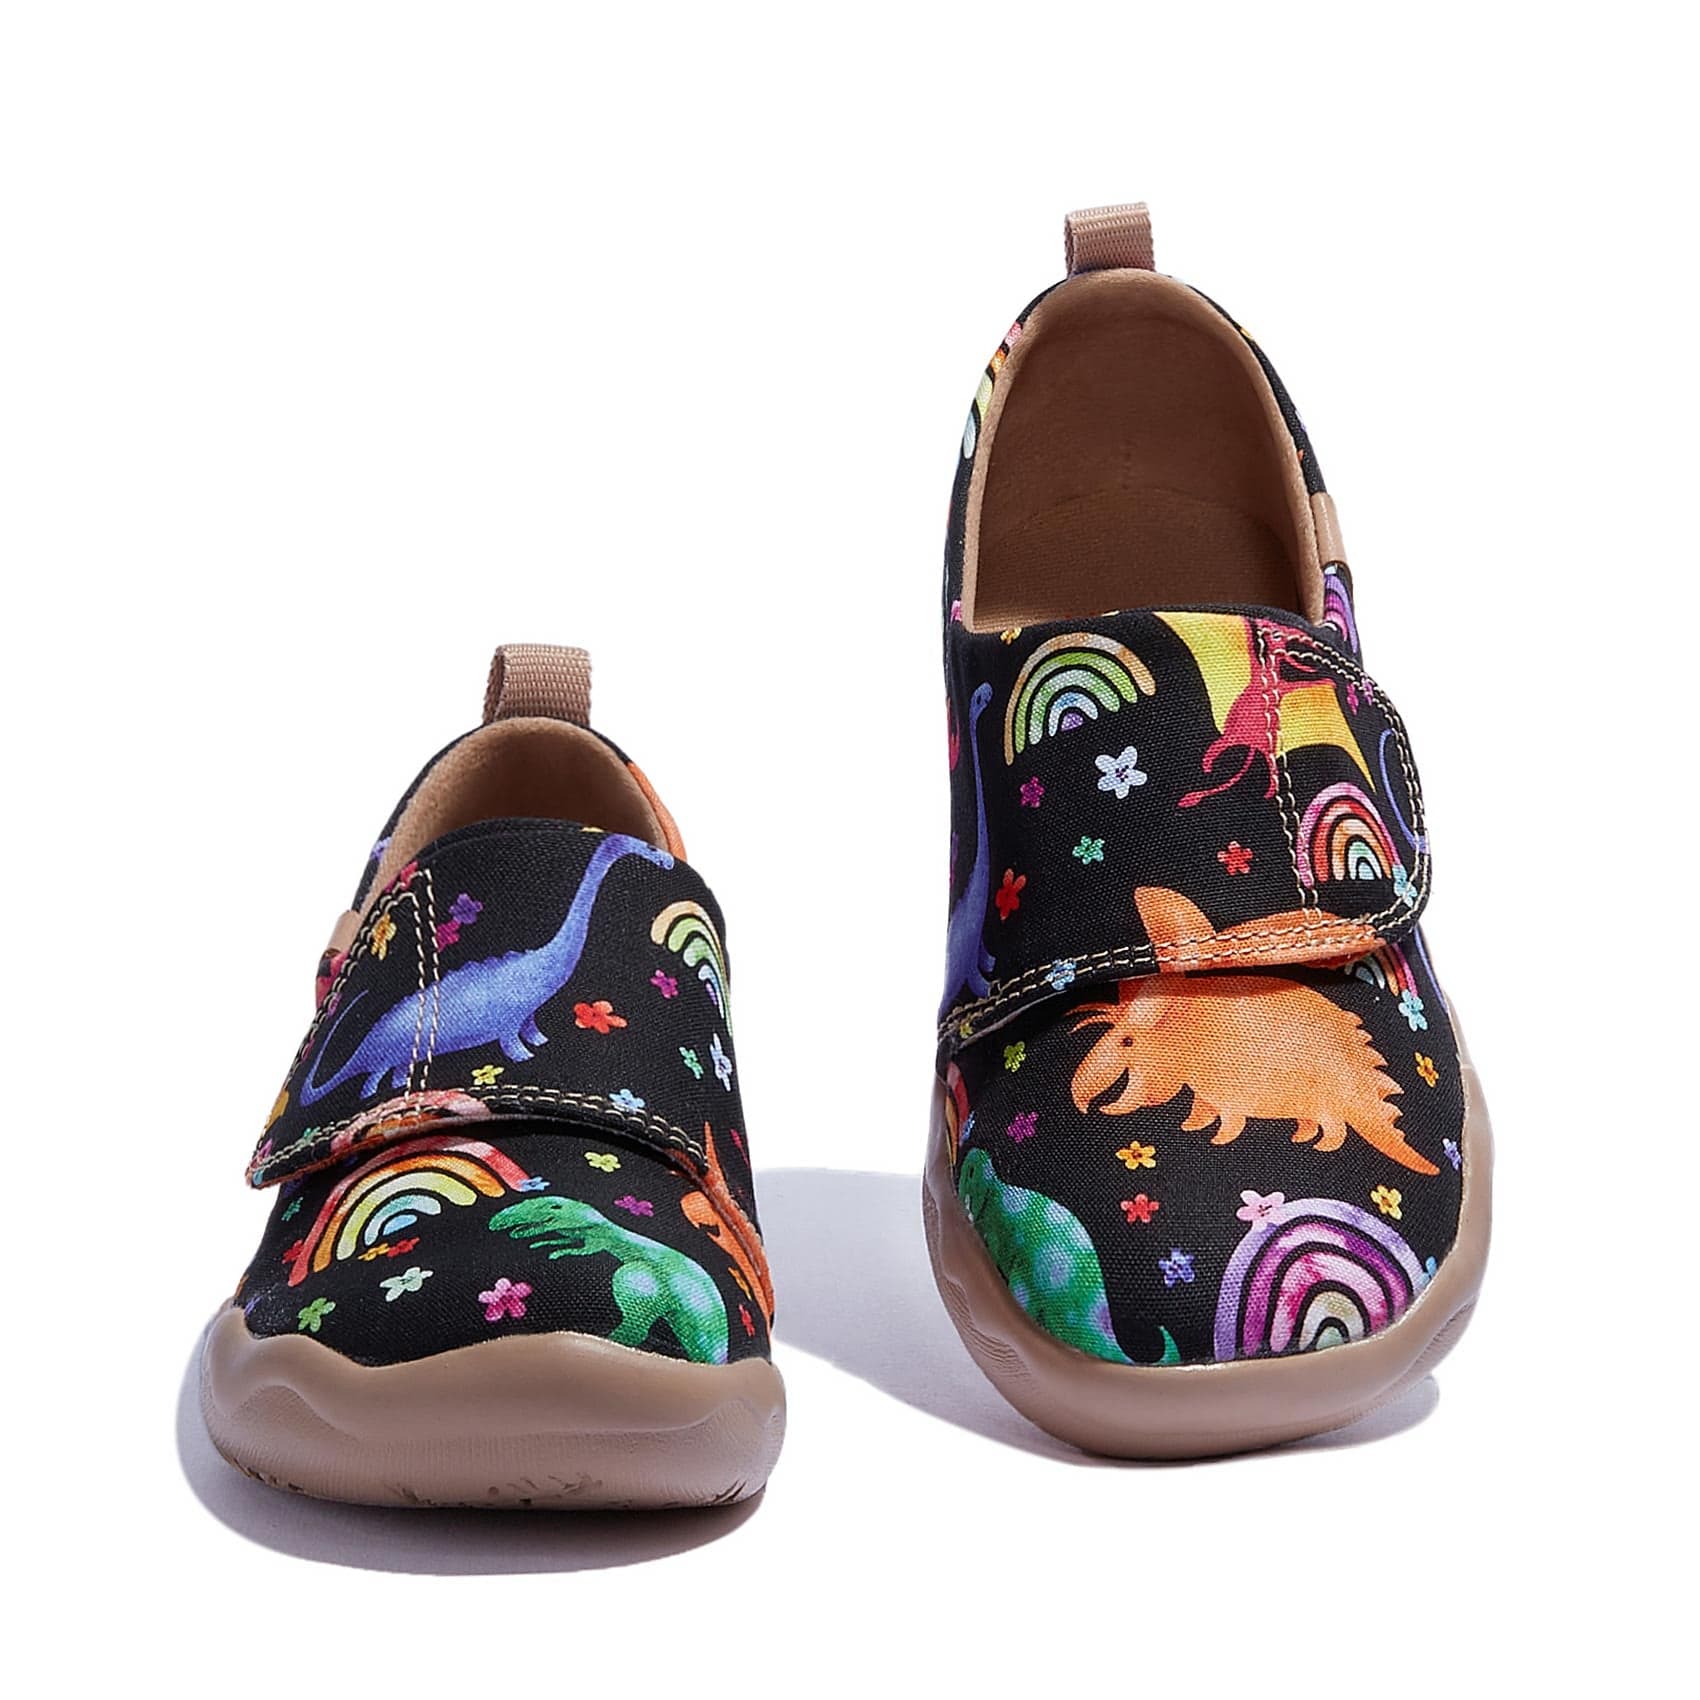 UIN Footwear Kid Dinosaurs Wonderland Toledo I Kid Canvas loafers